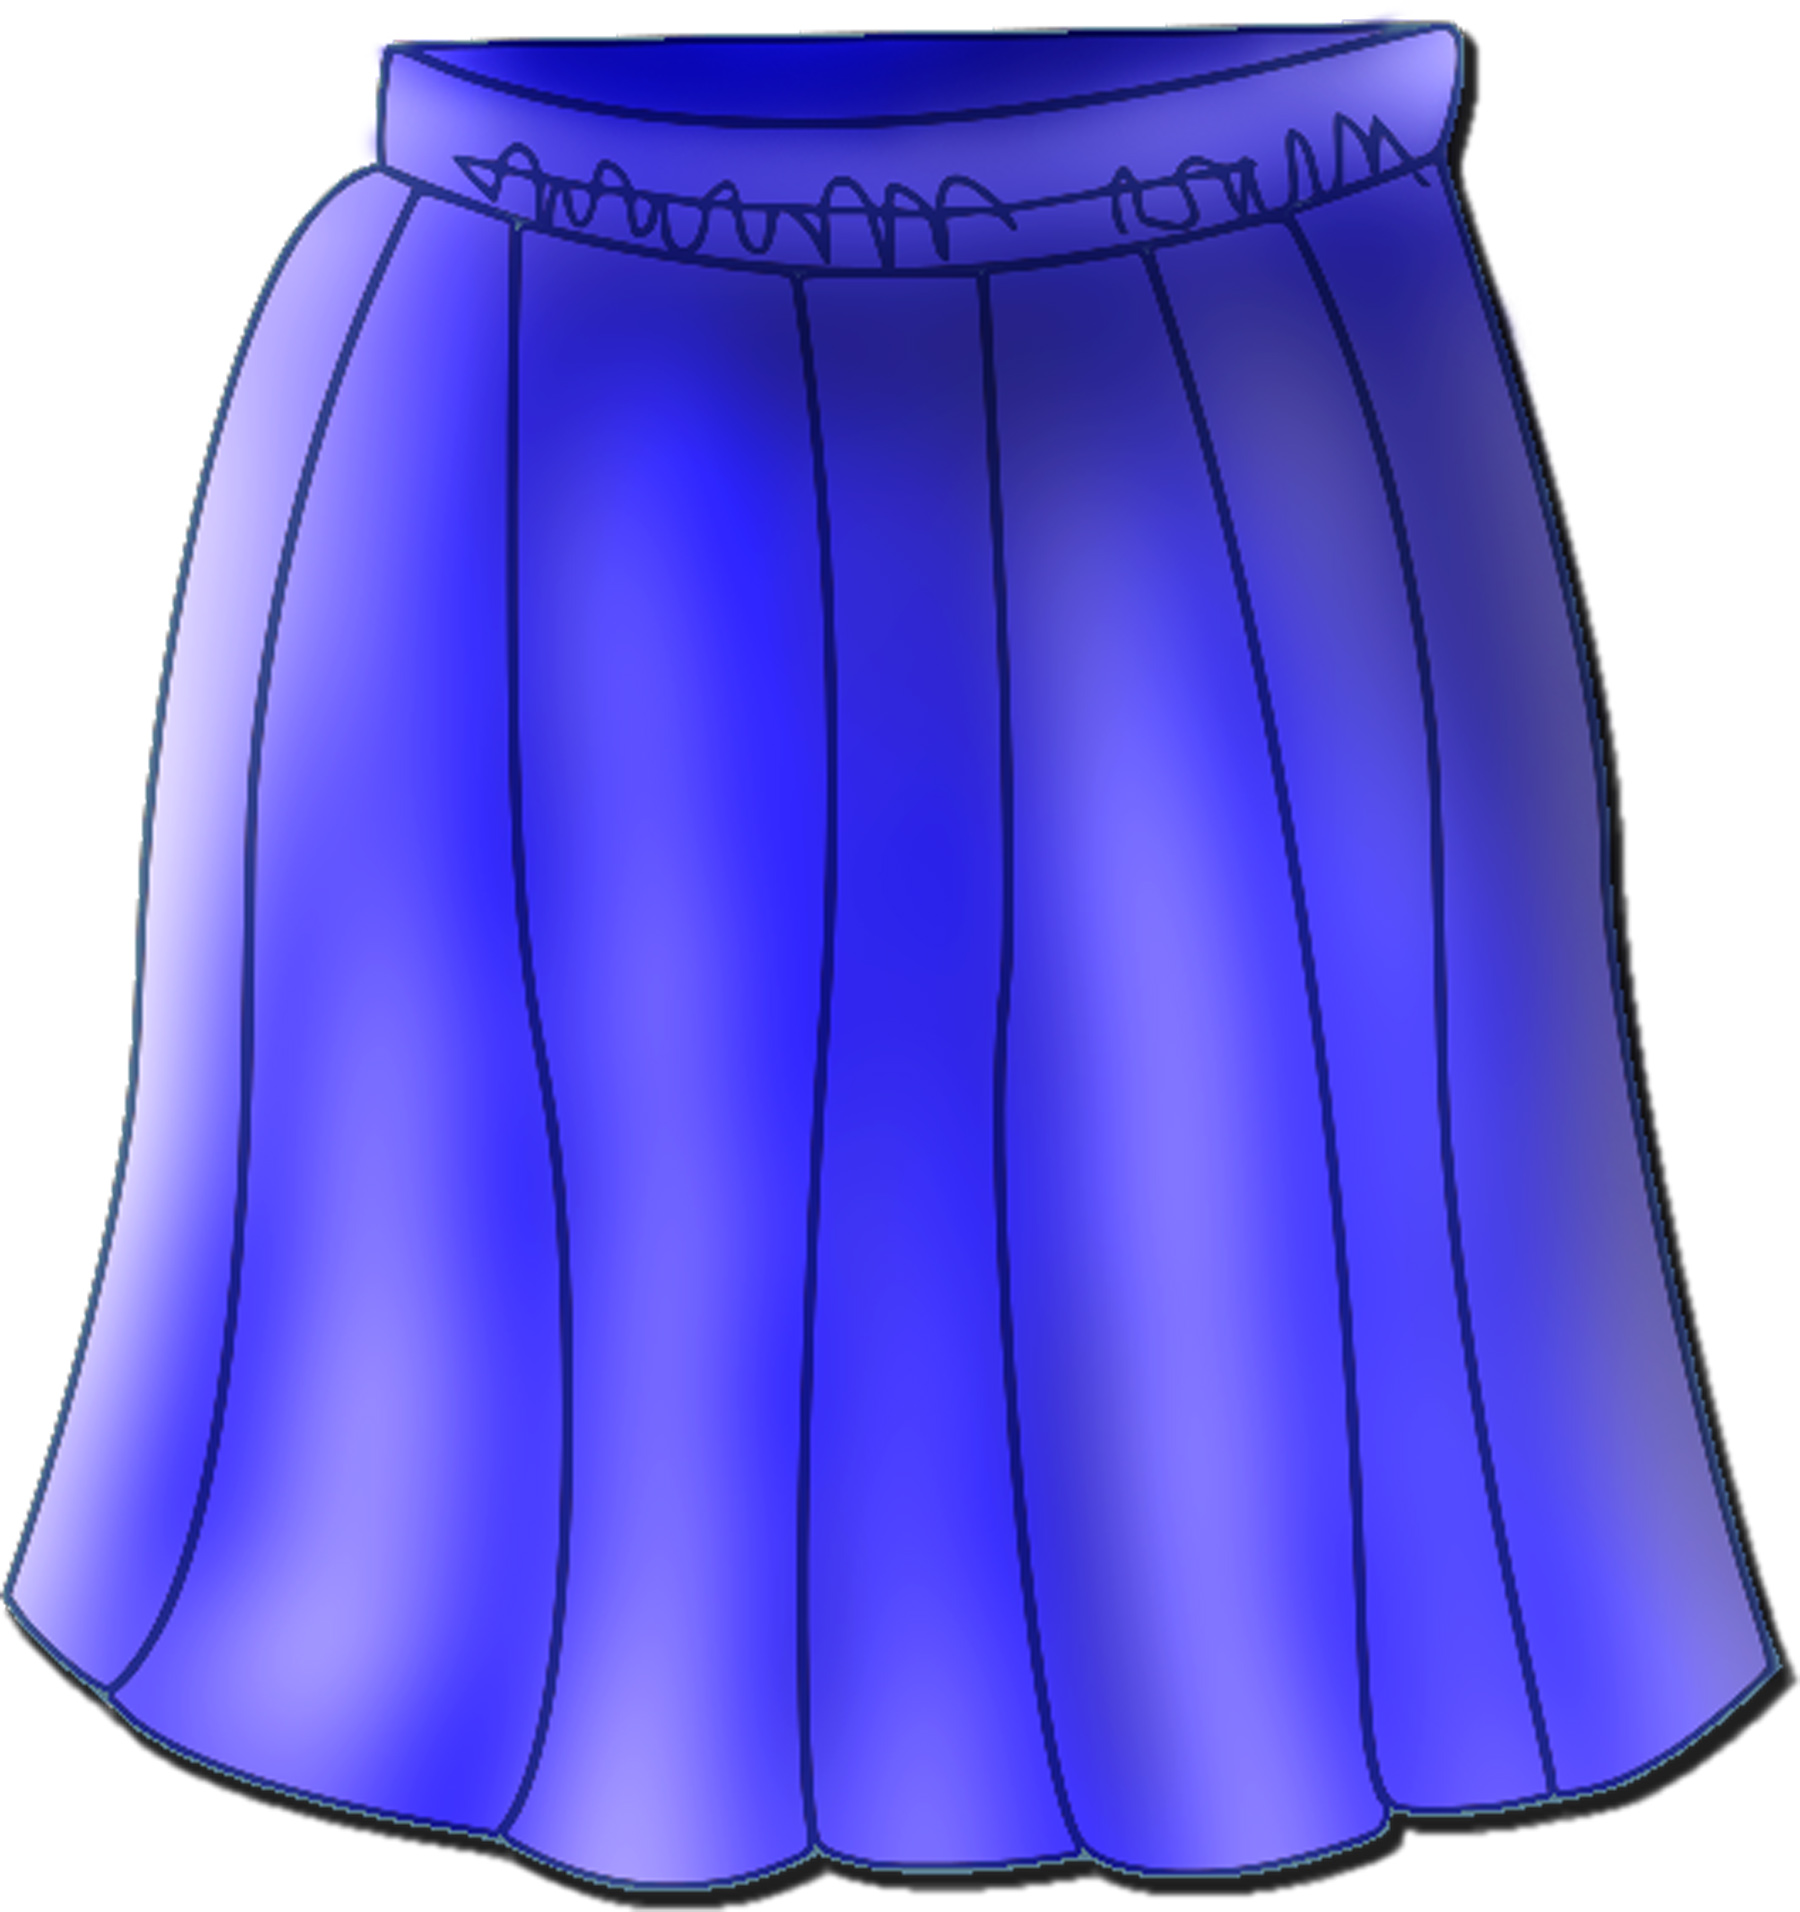 Skirt Clip Art Skirt